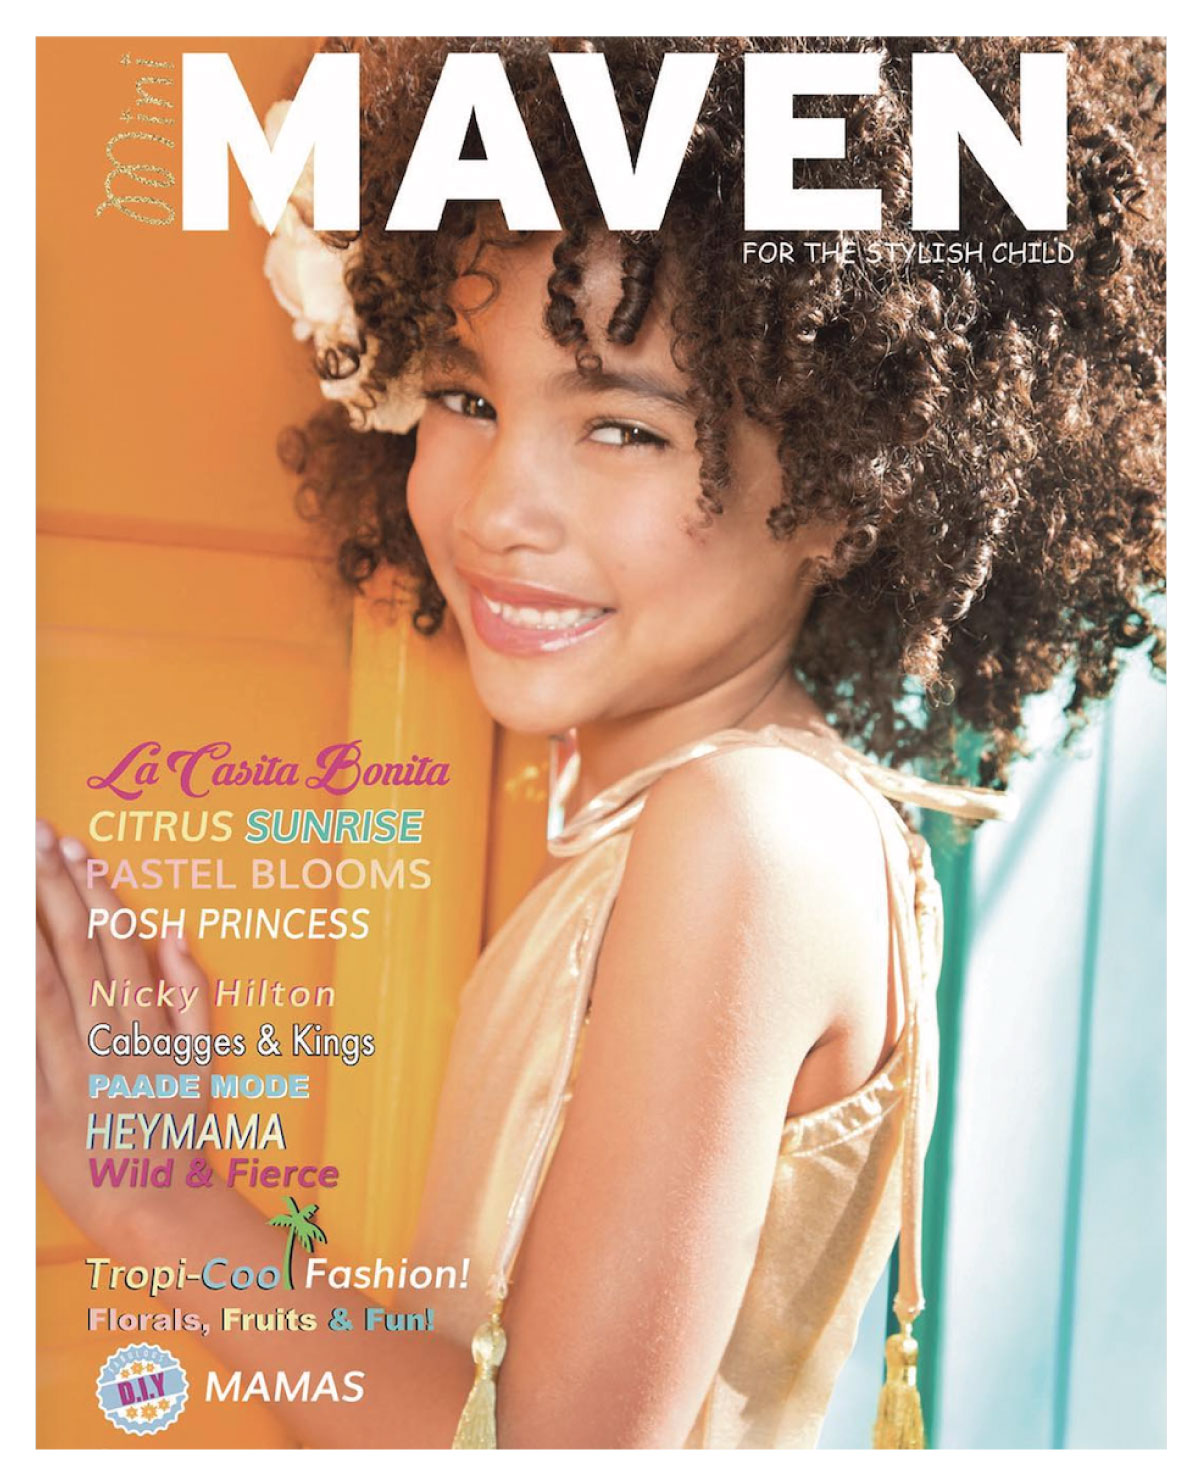 Mini Maven Kids Magazine Cover